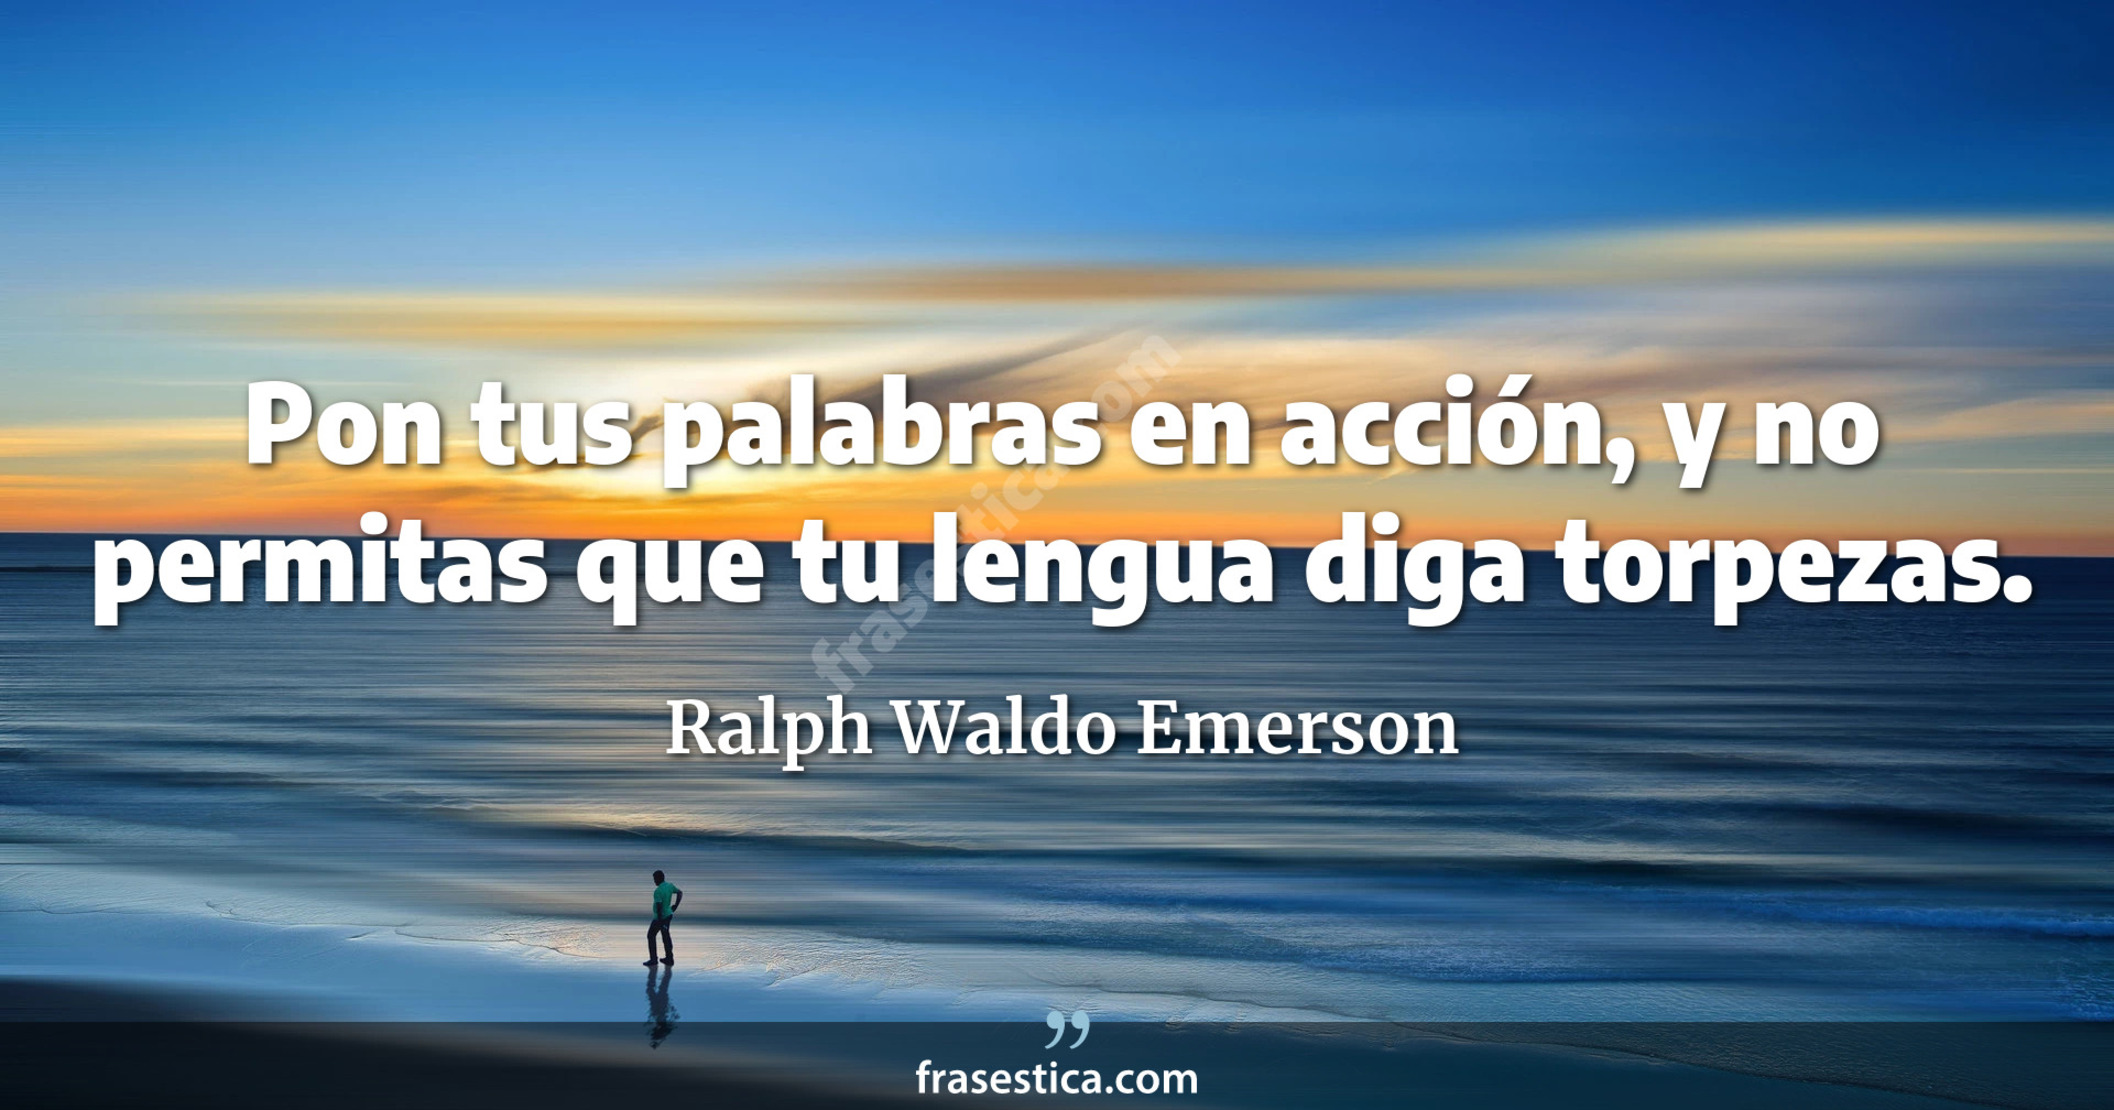 Pon tus palabras en acción, y no permitas que tu lengua diga torpezas. - Ralph Waldo Emerson